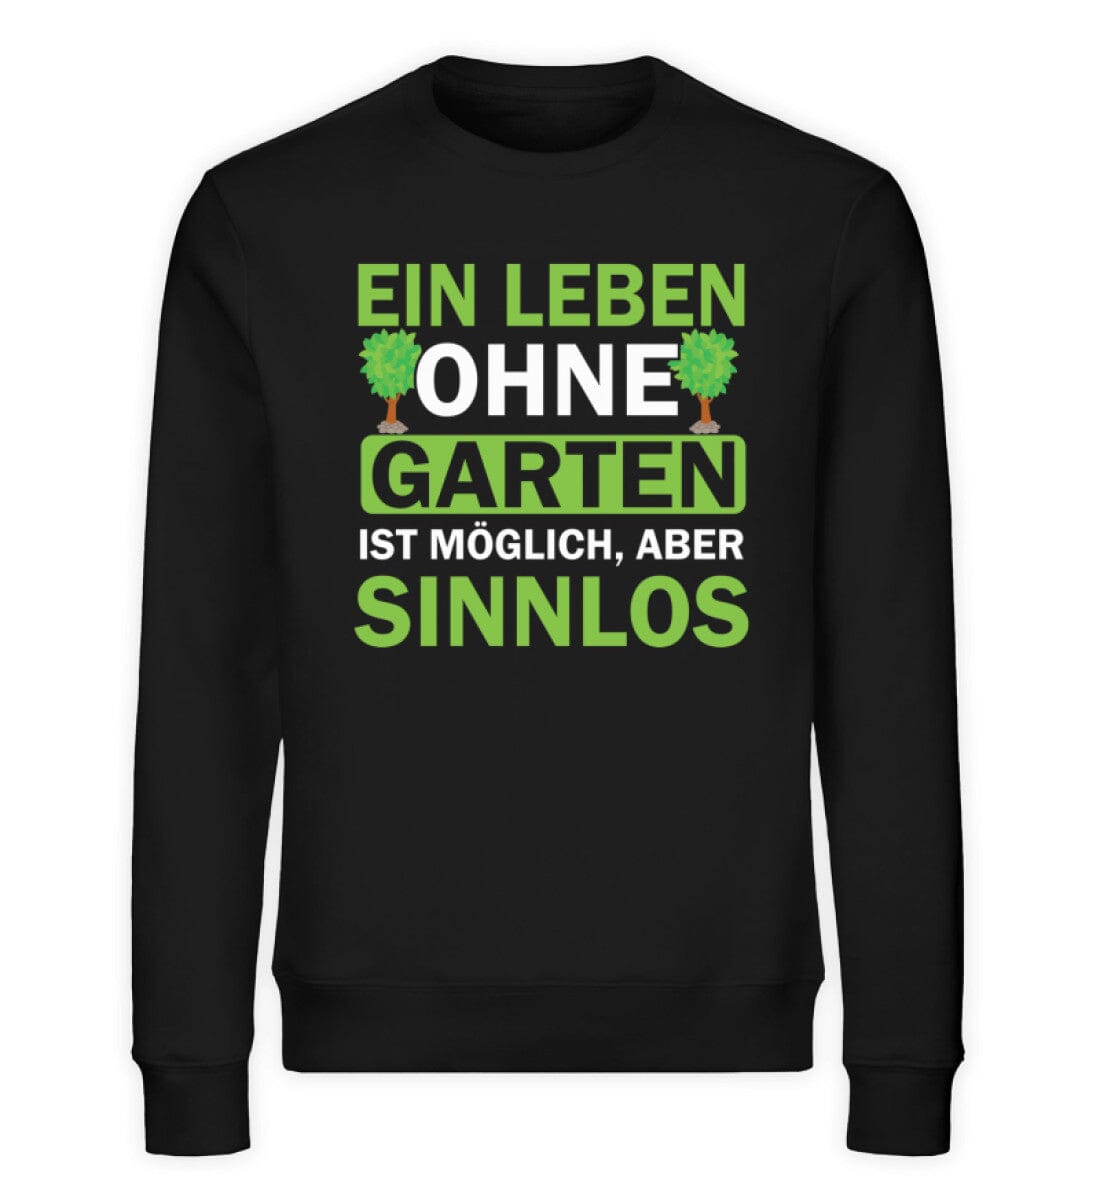 Ein Leben ohne Garten ist sinnlos - Unisex Bio Sweatshirt Black XS 